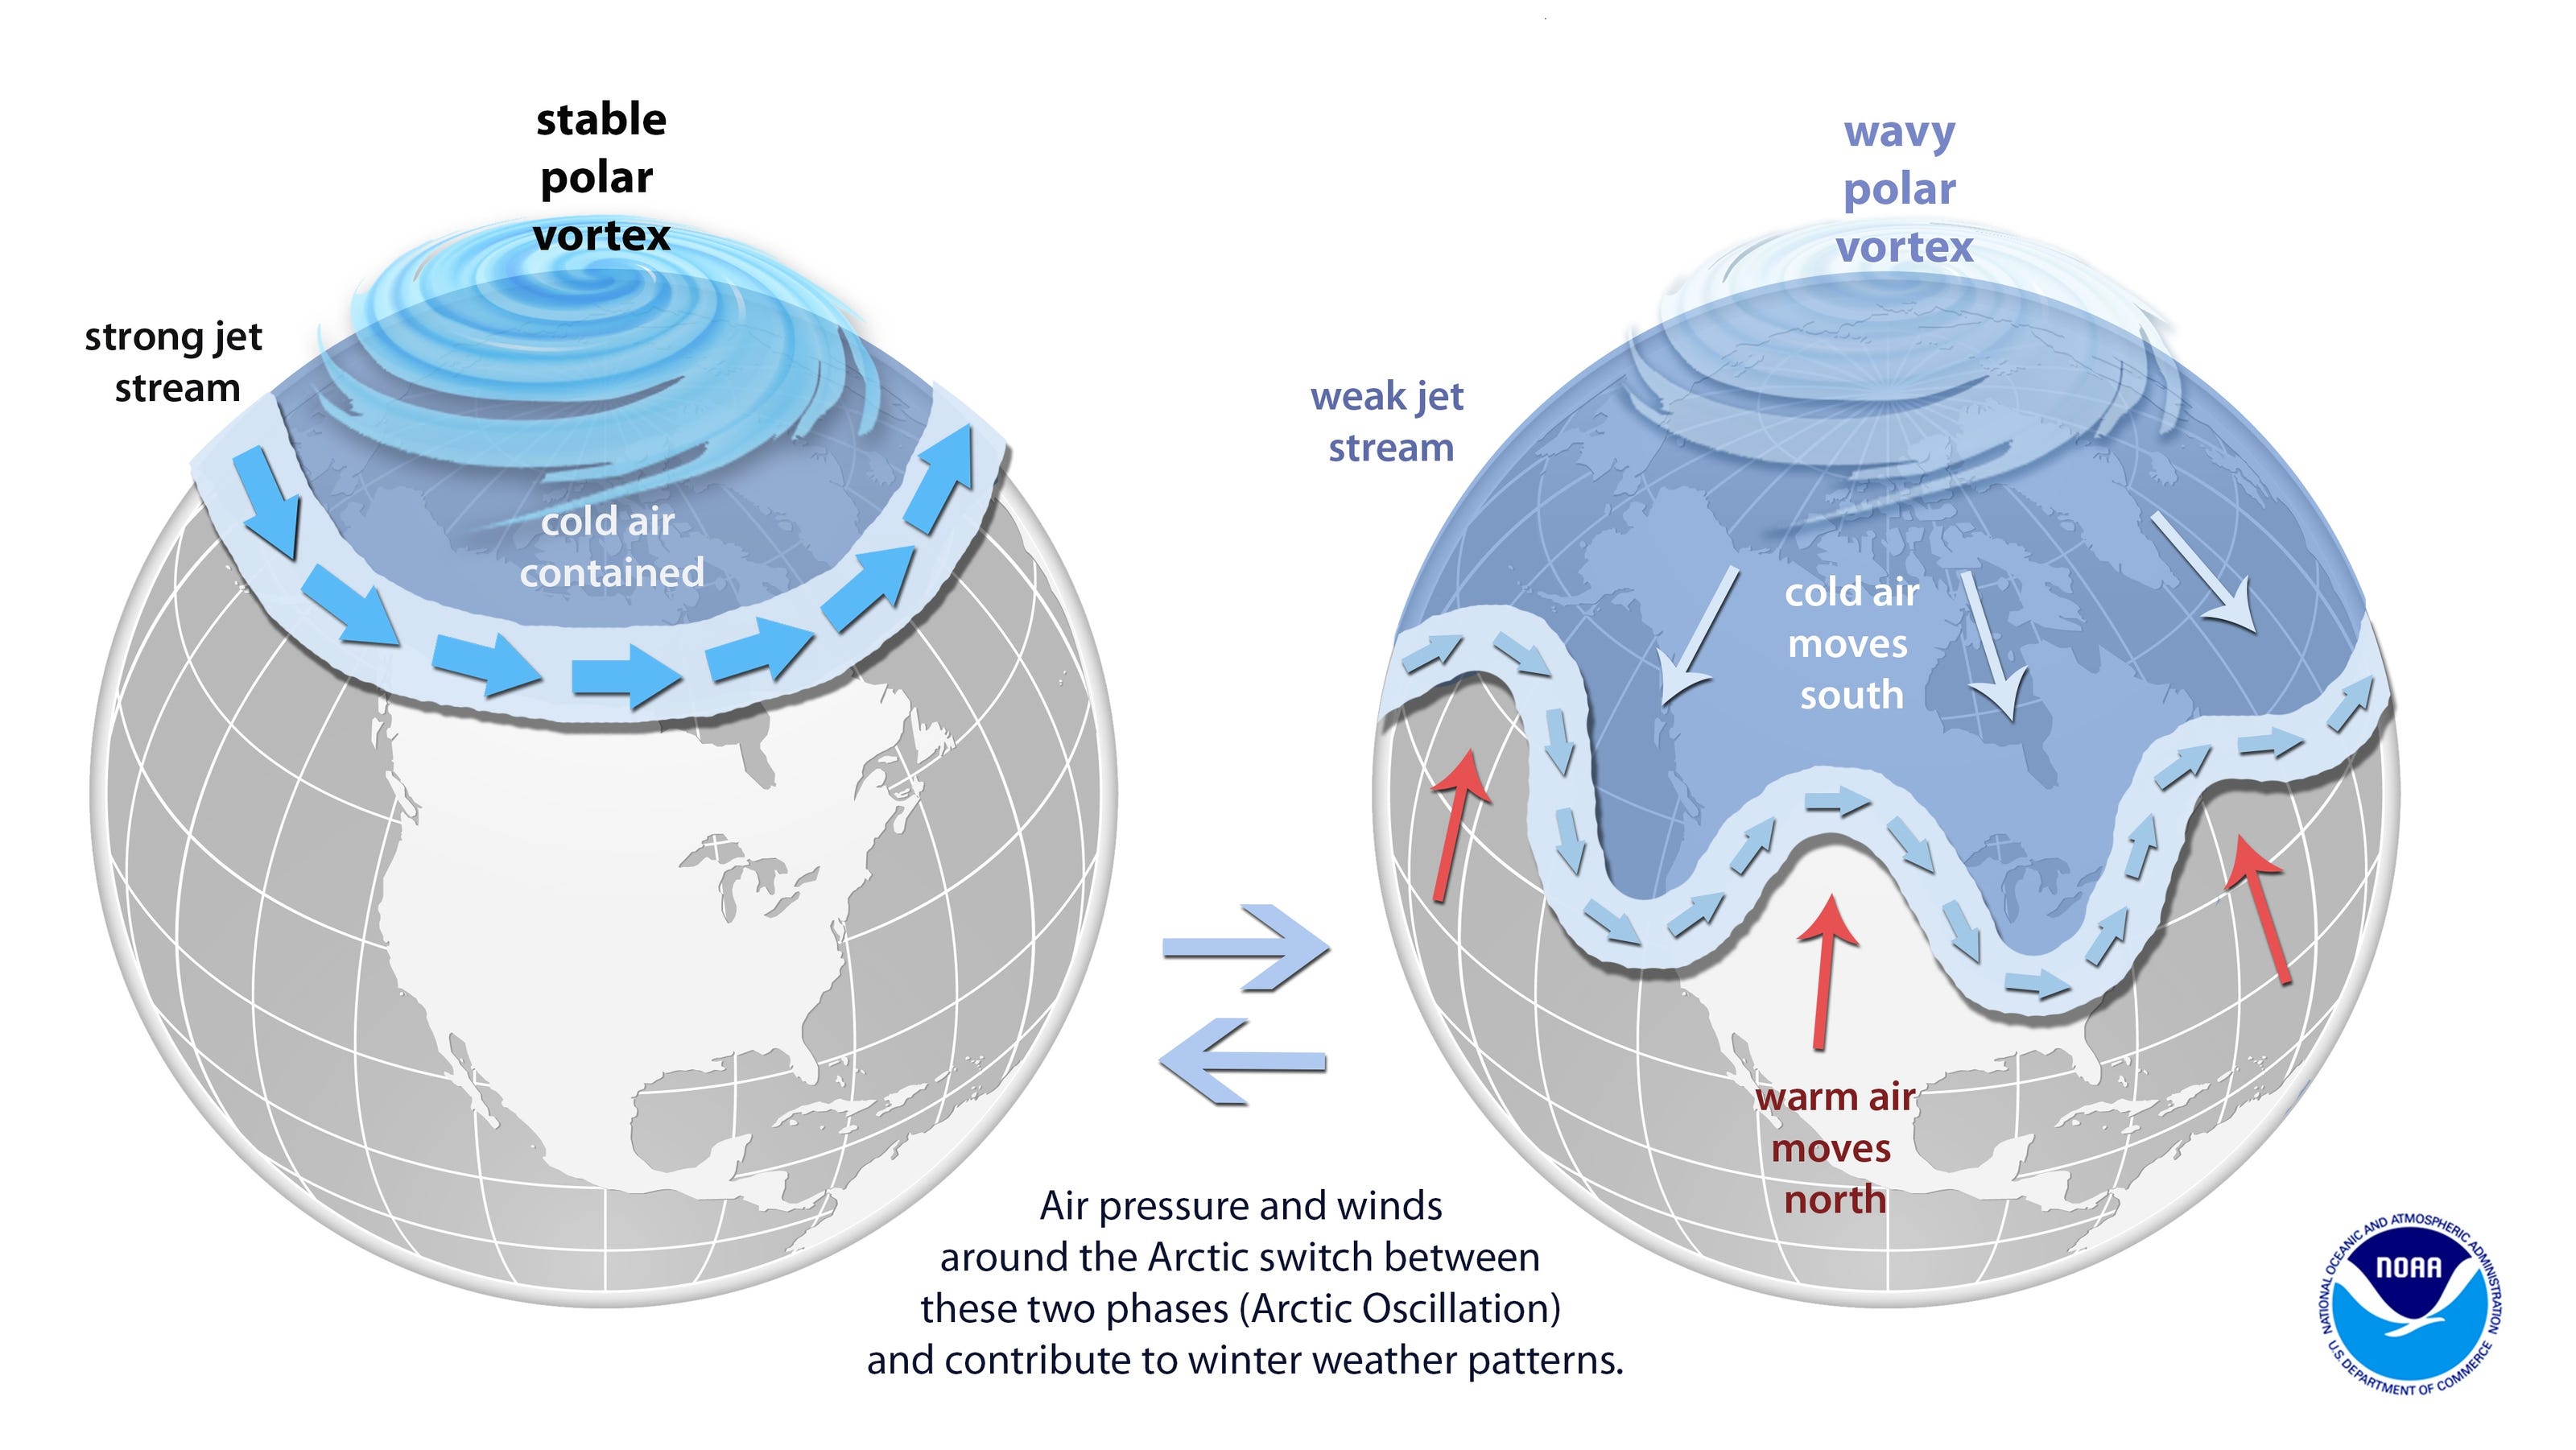 Polar vortex First 2 months of winter were warmest on record in U.S.